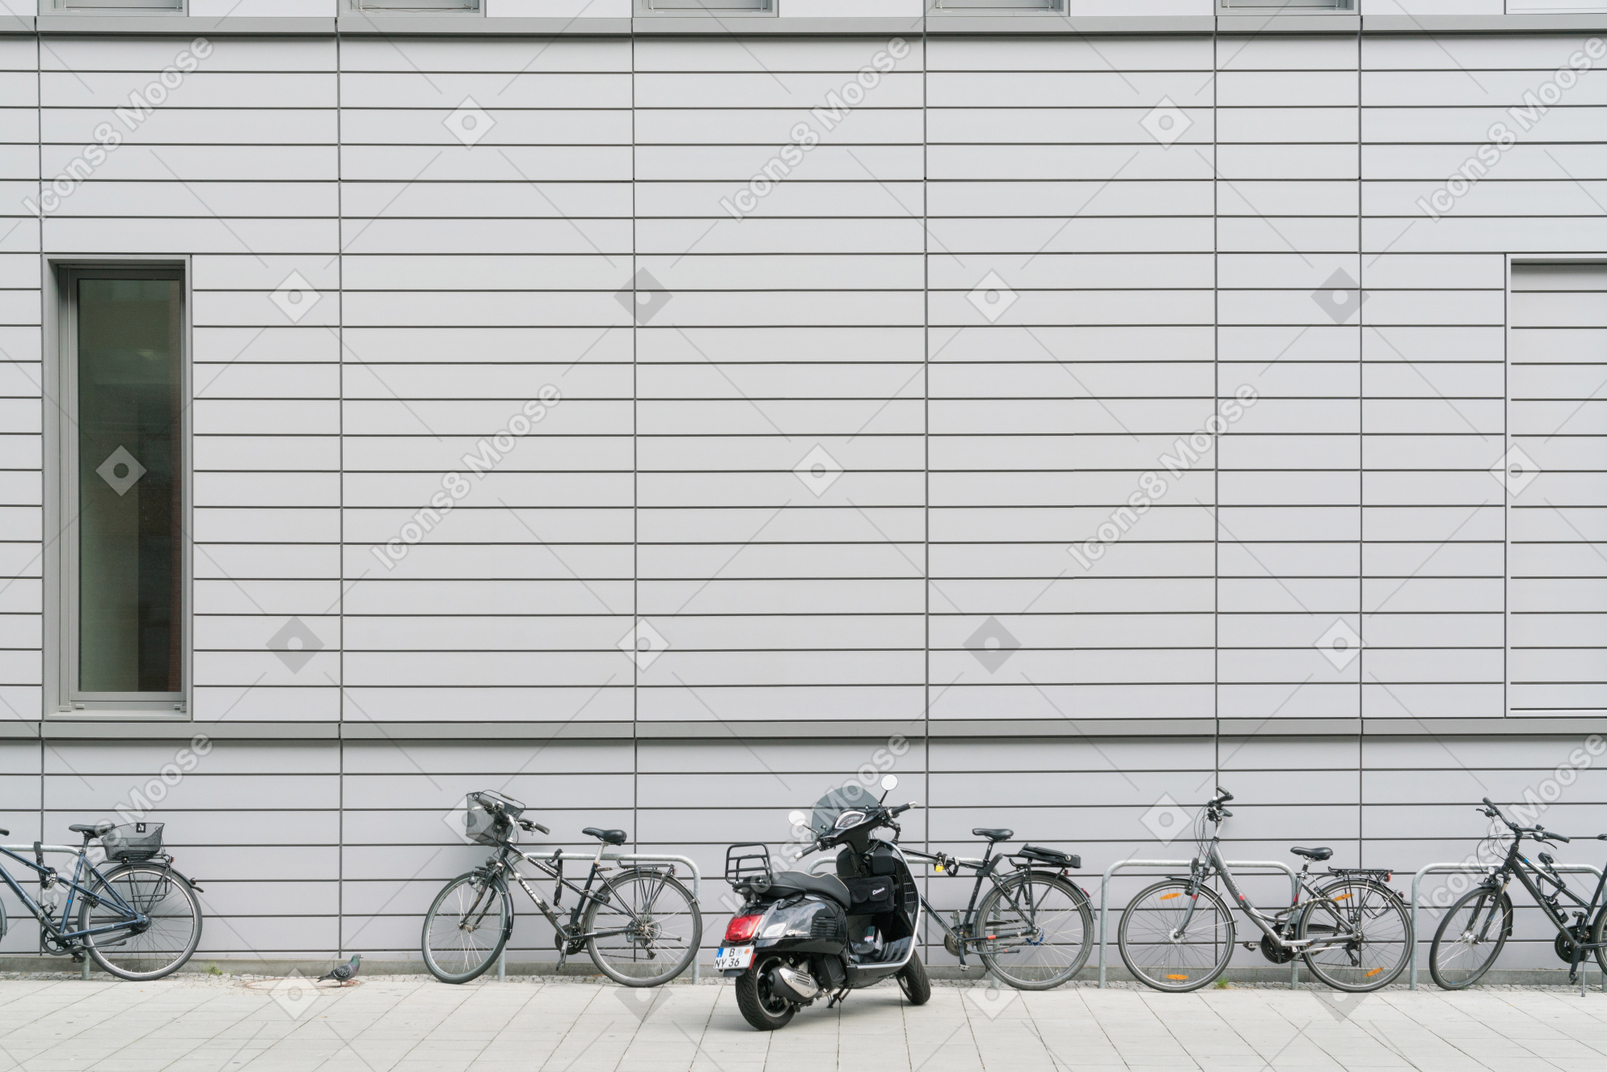 Bicicletas e scooters estacionados em frente ao prédio